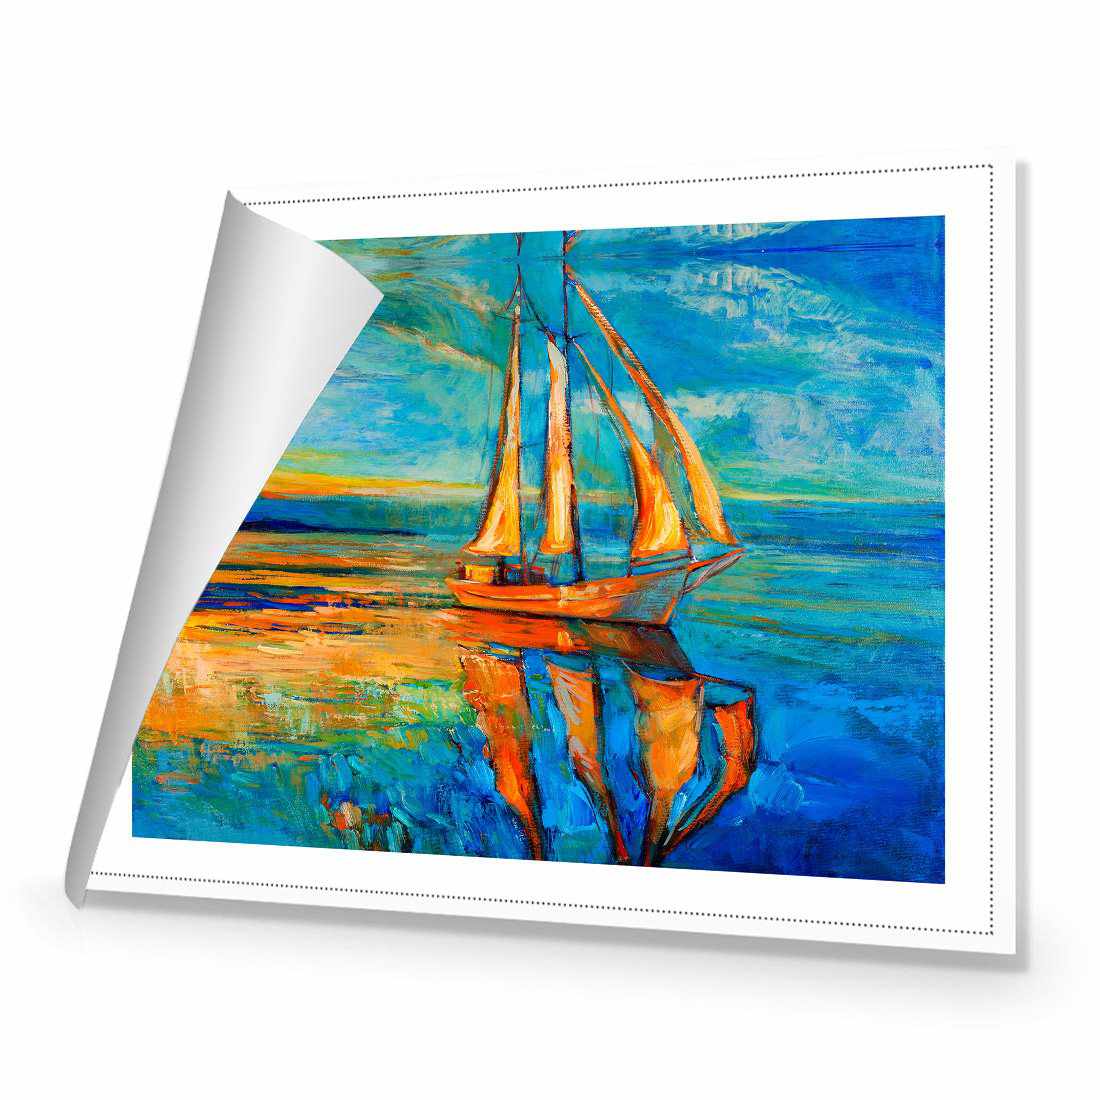 Sailing Boat Reflected Canvas Art-Canvas-Wall Art Designs-45x30cm-Rolled Canvas-Wall Art Designs